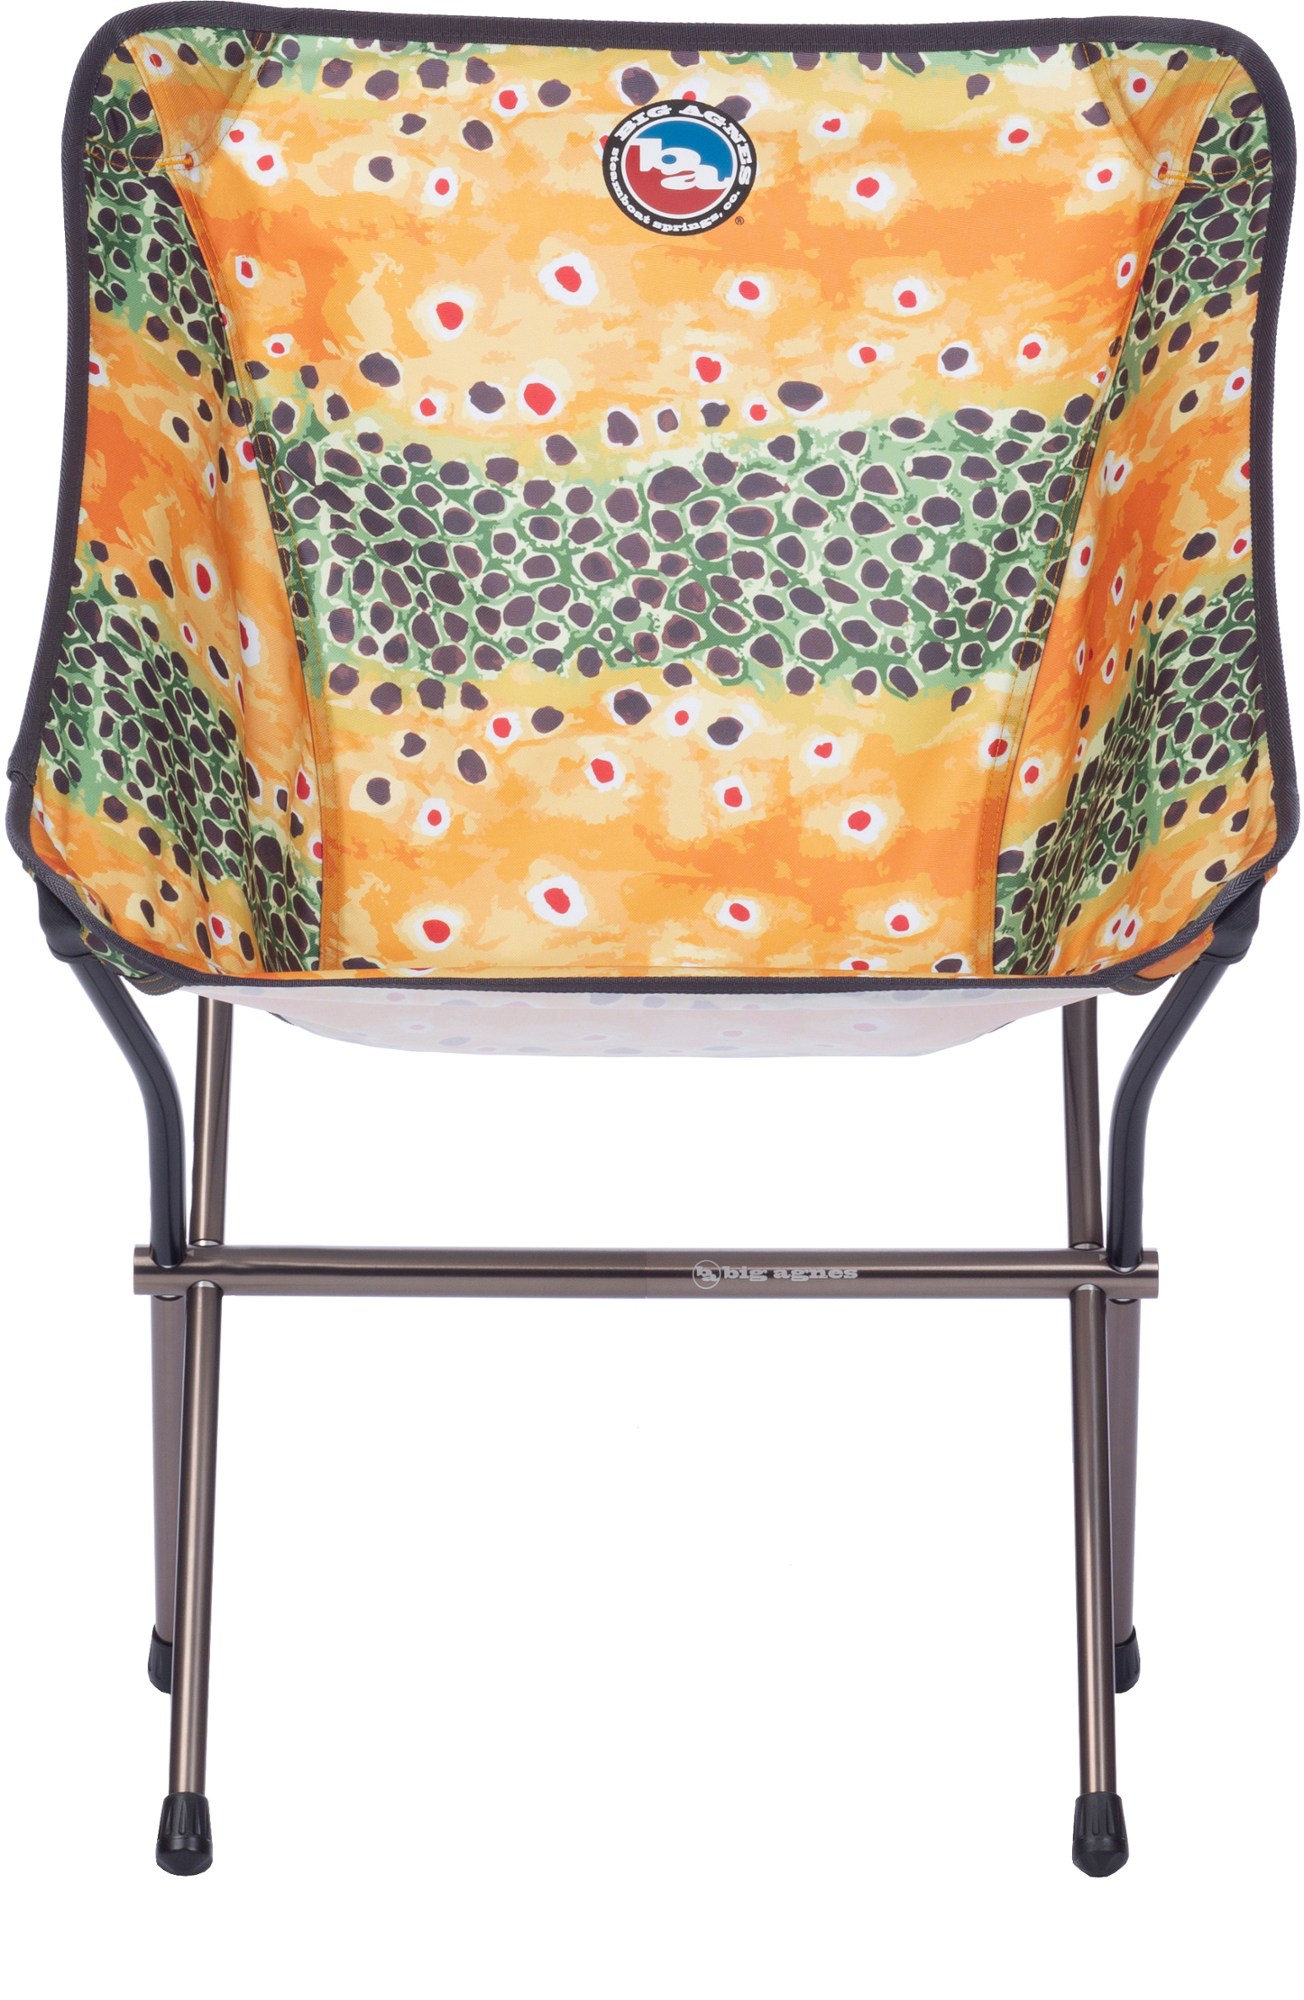 Походное кресло Mica Basin - XL Big Agnes, коричневый кресло компактное туристическое afc 500